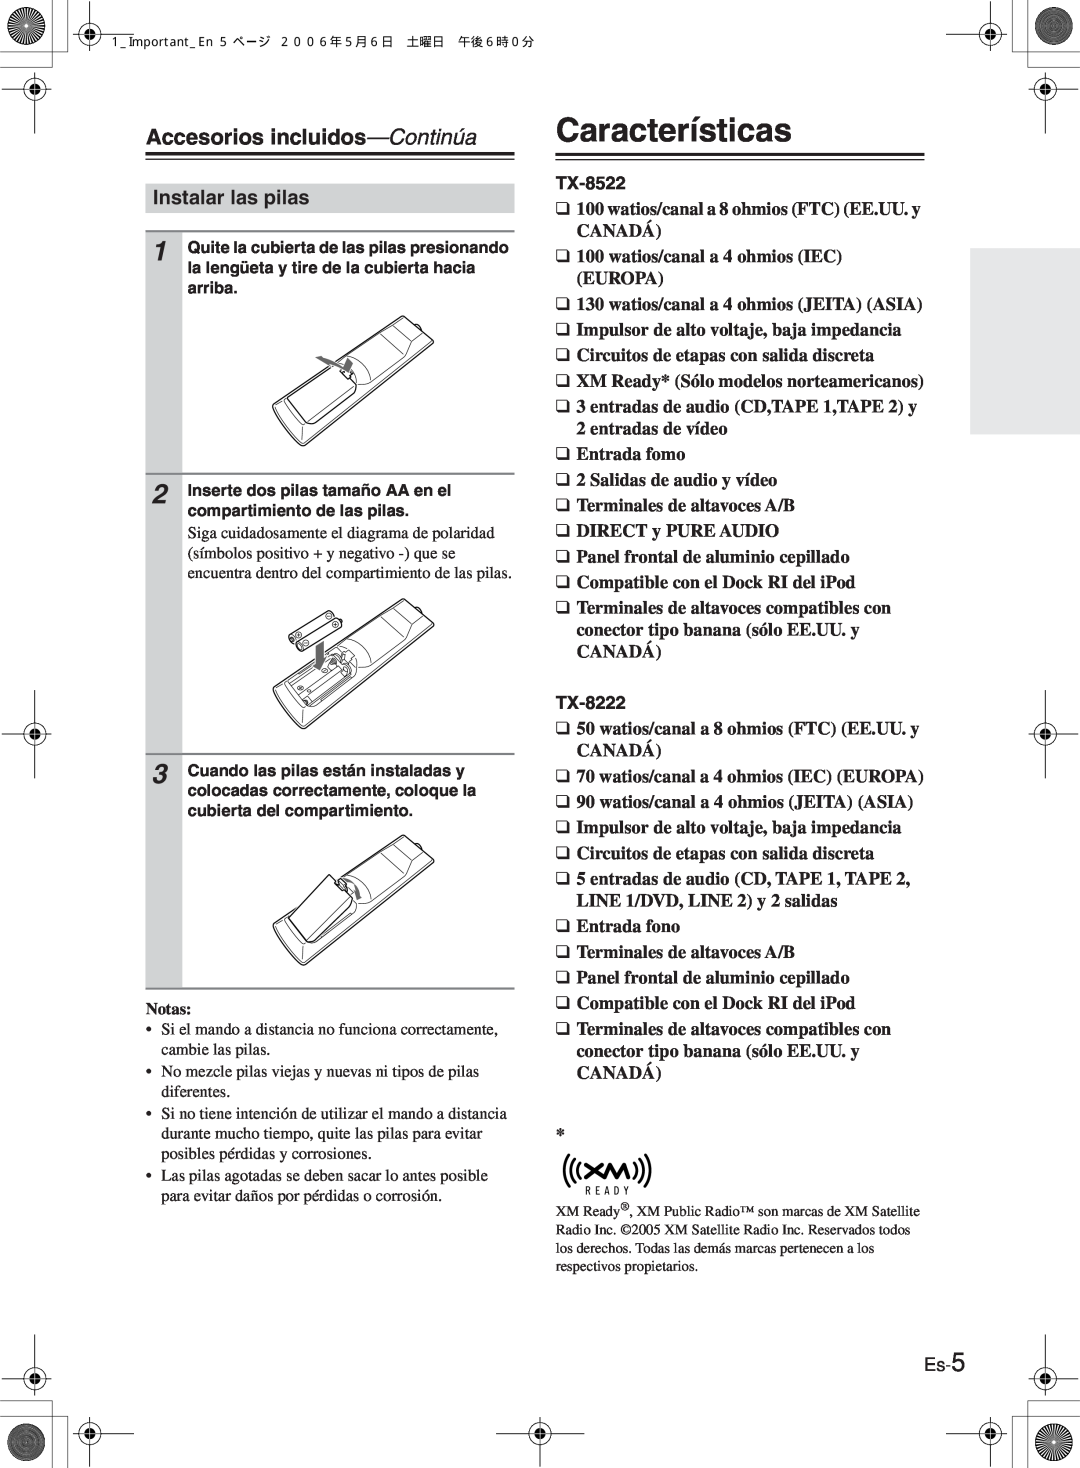 Onkyo TX-8522 manual Características, Accesorios incluidos—Continúa, Instalar las pilas, TX-8222 